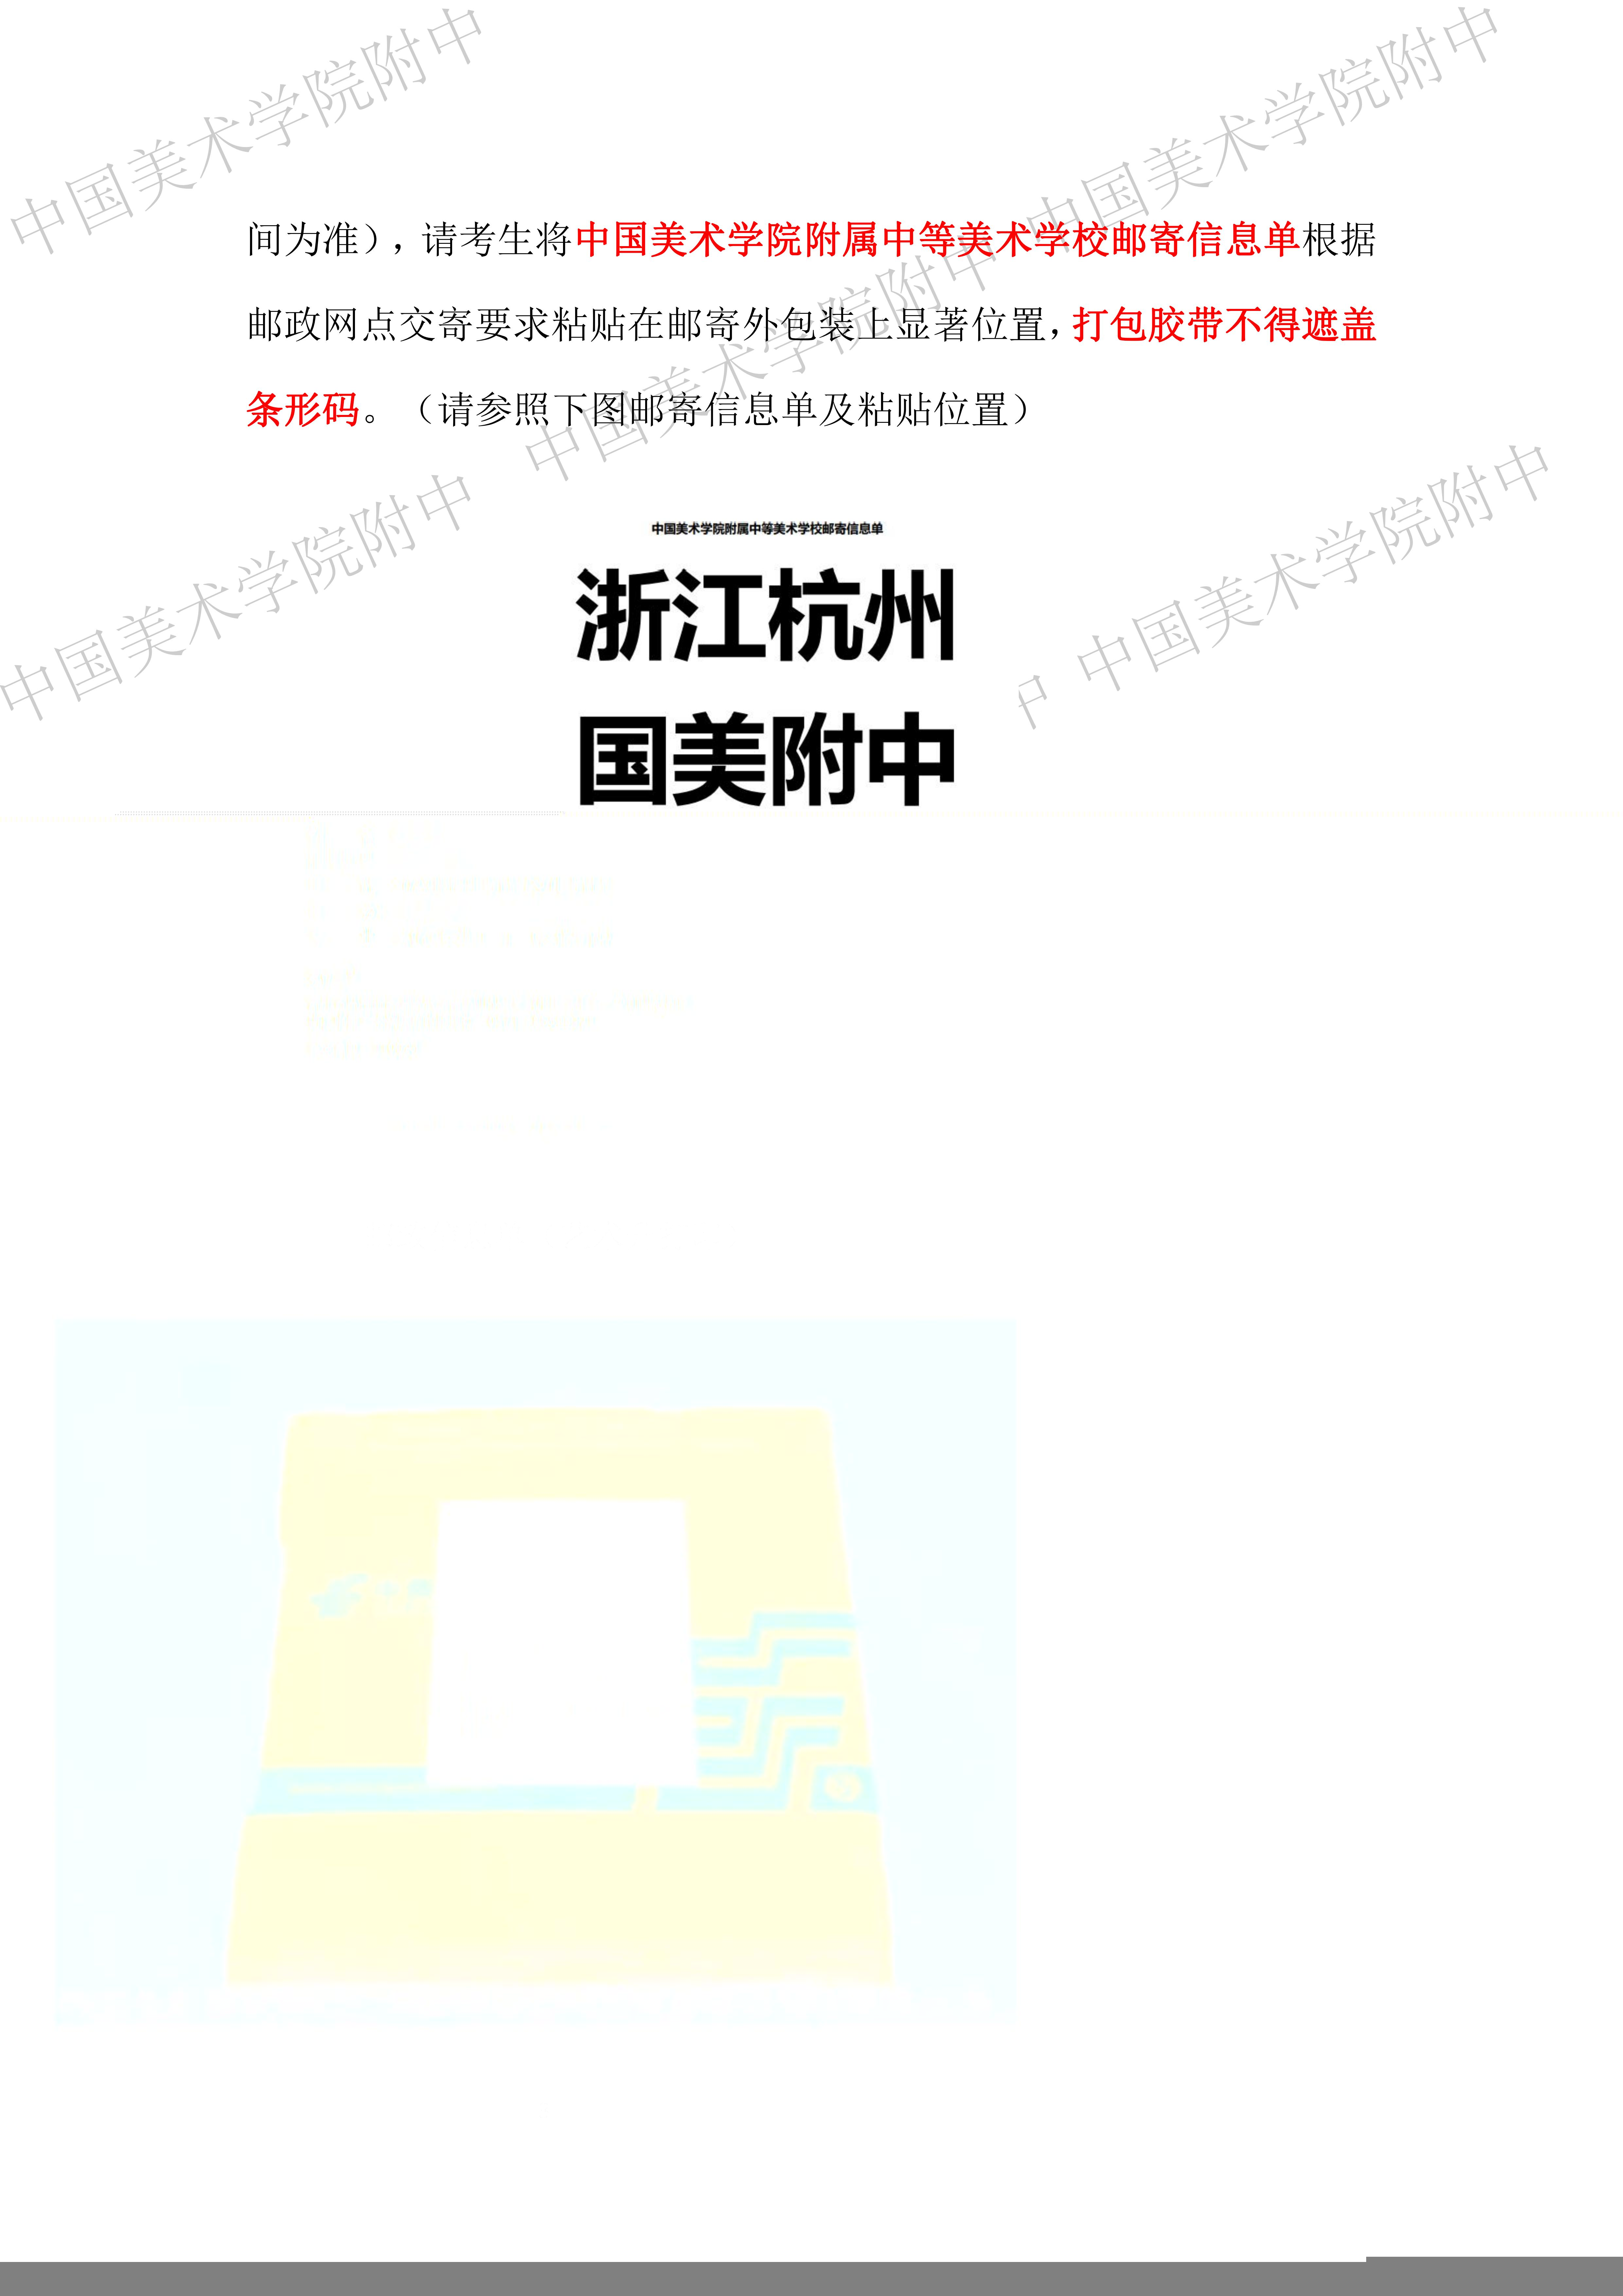 中国美术学院附属中等美术学校 2022 年招生考试 （网络远程考试）试卷、答卷封装及邮寄要求